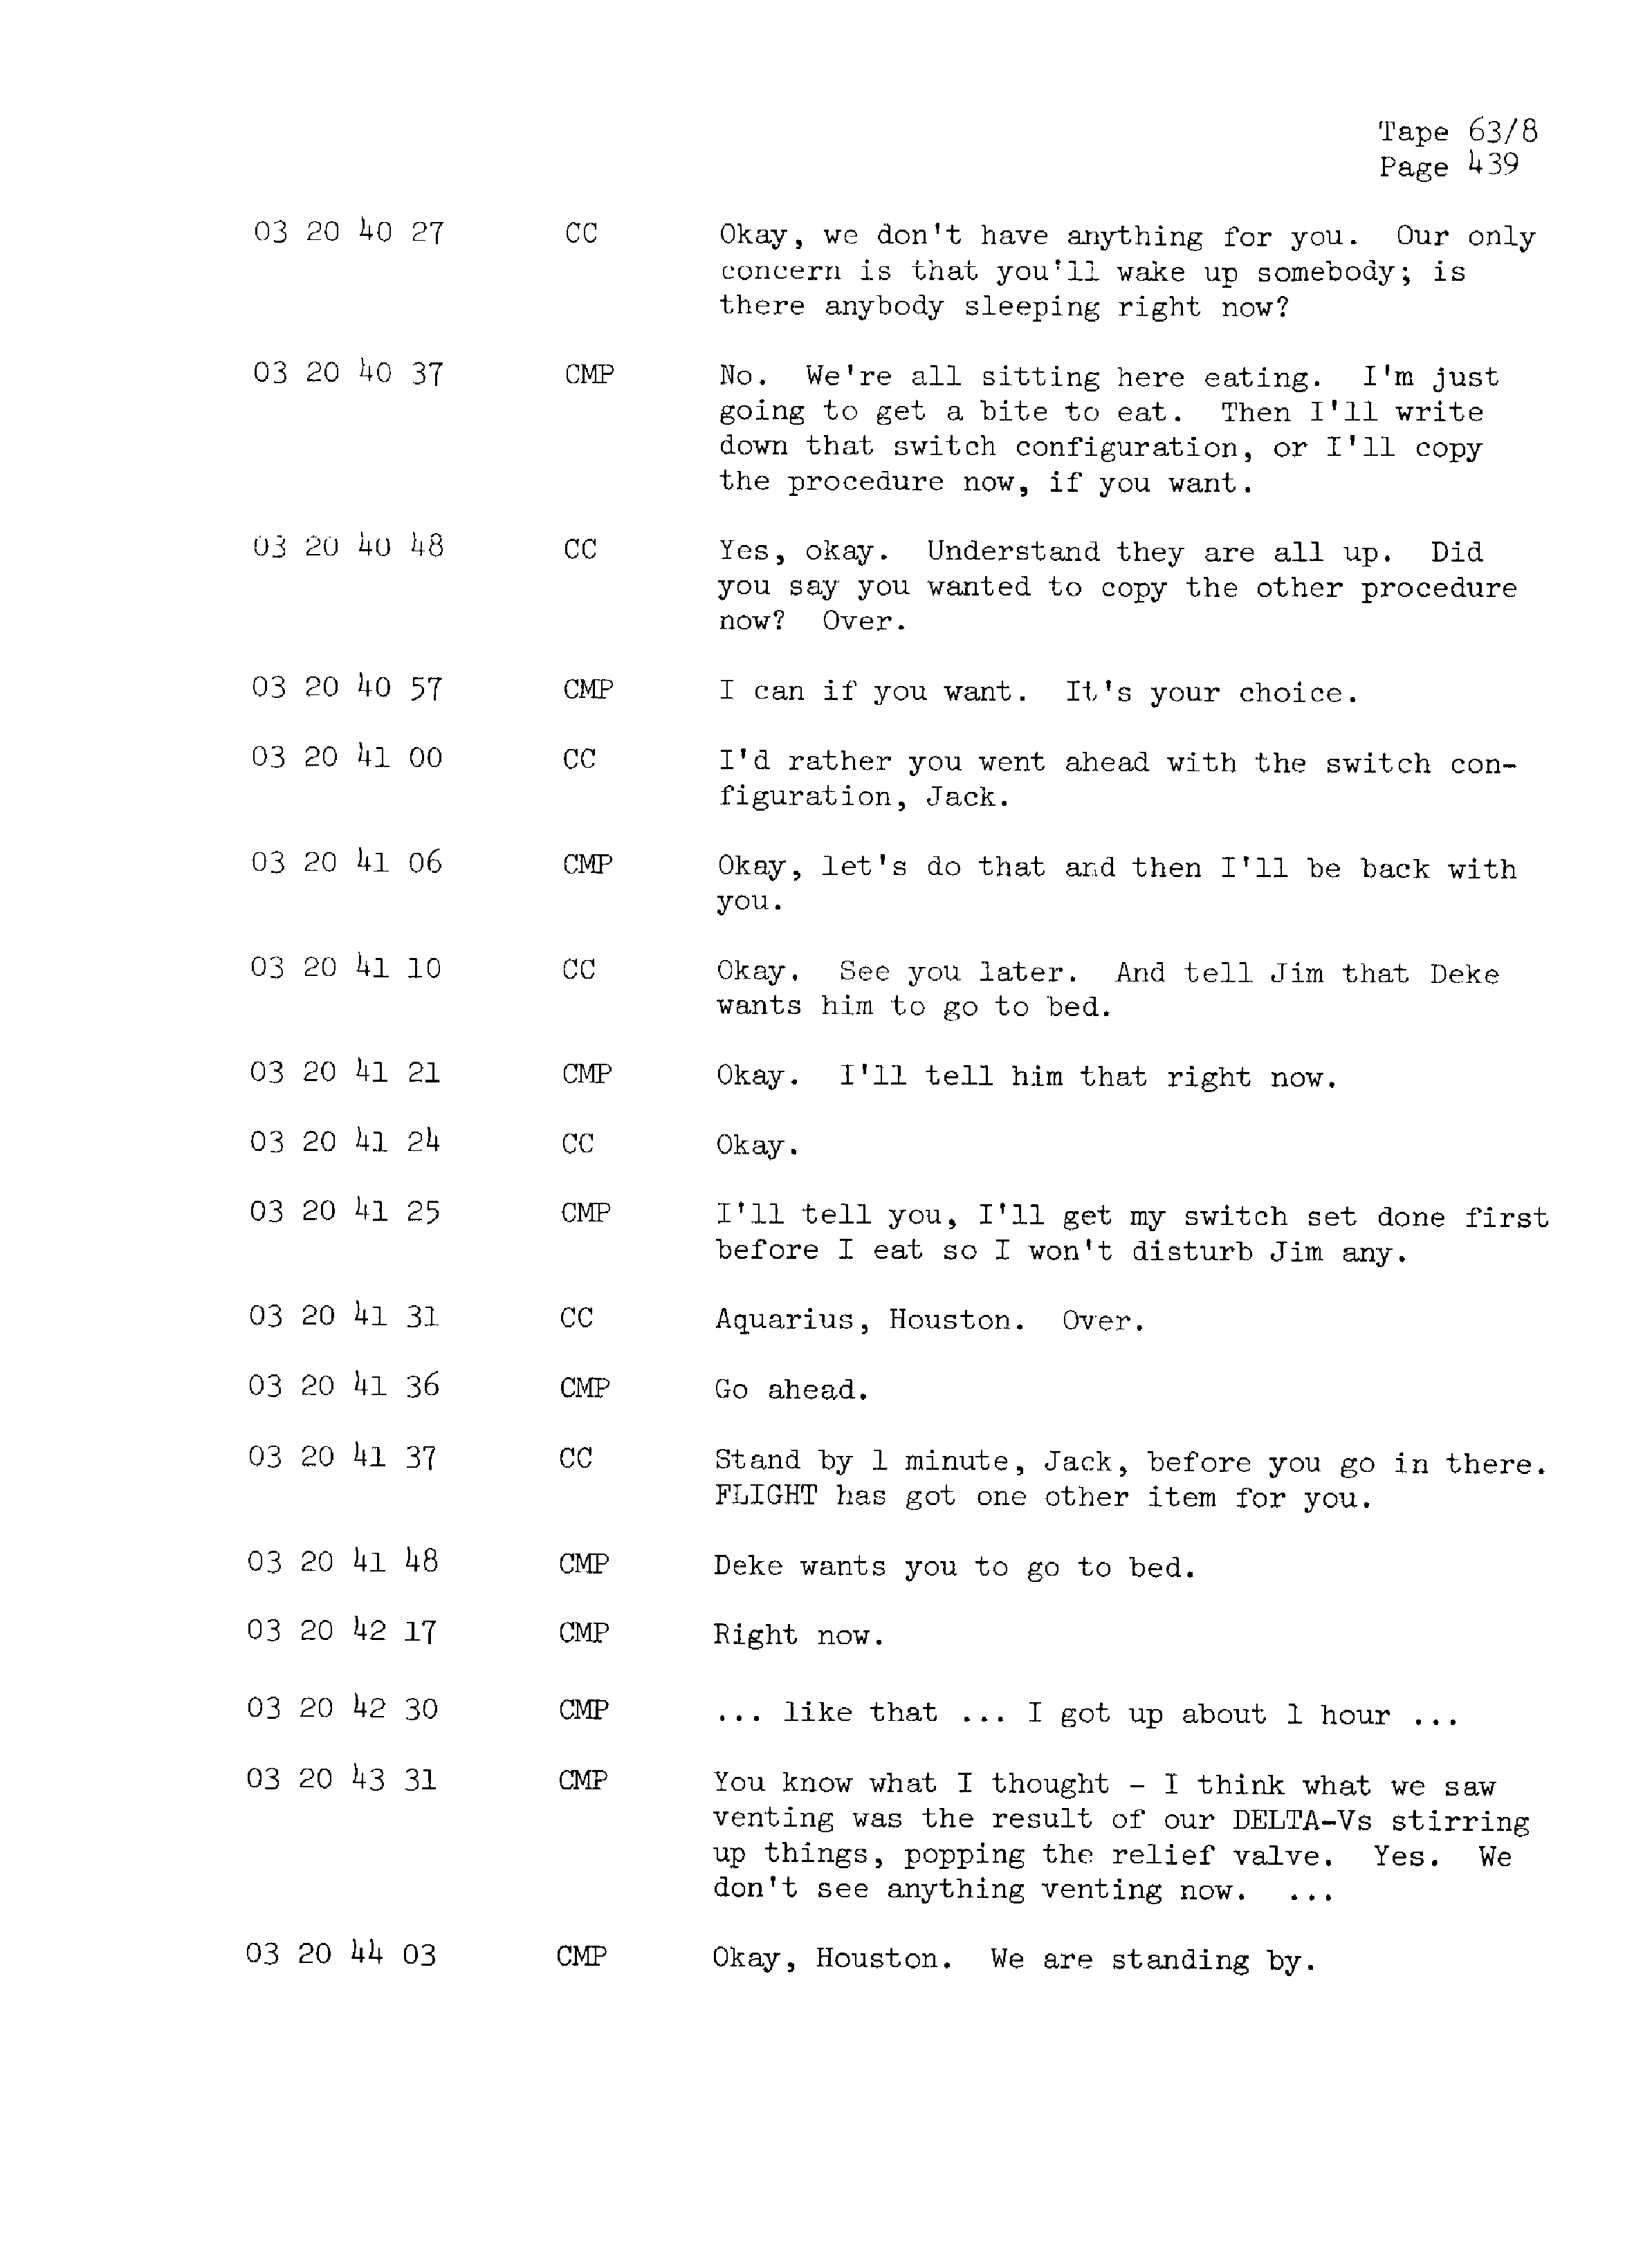 Page 446 of Apollo 13’s original transcript